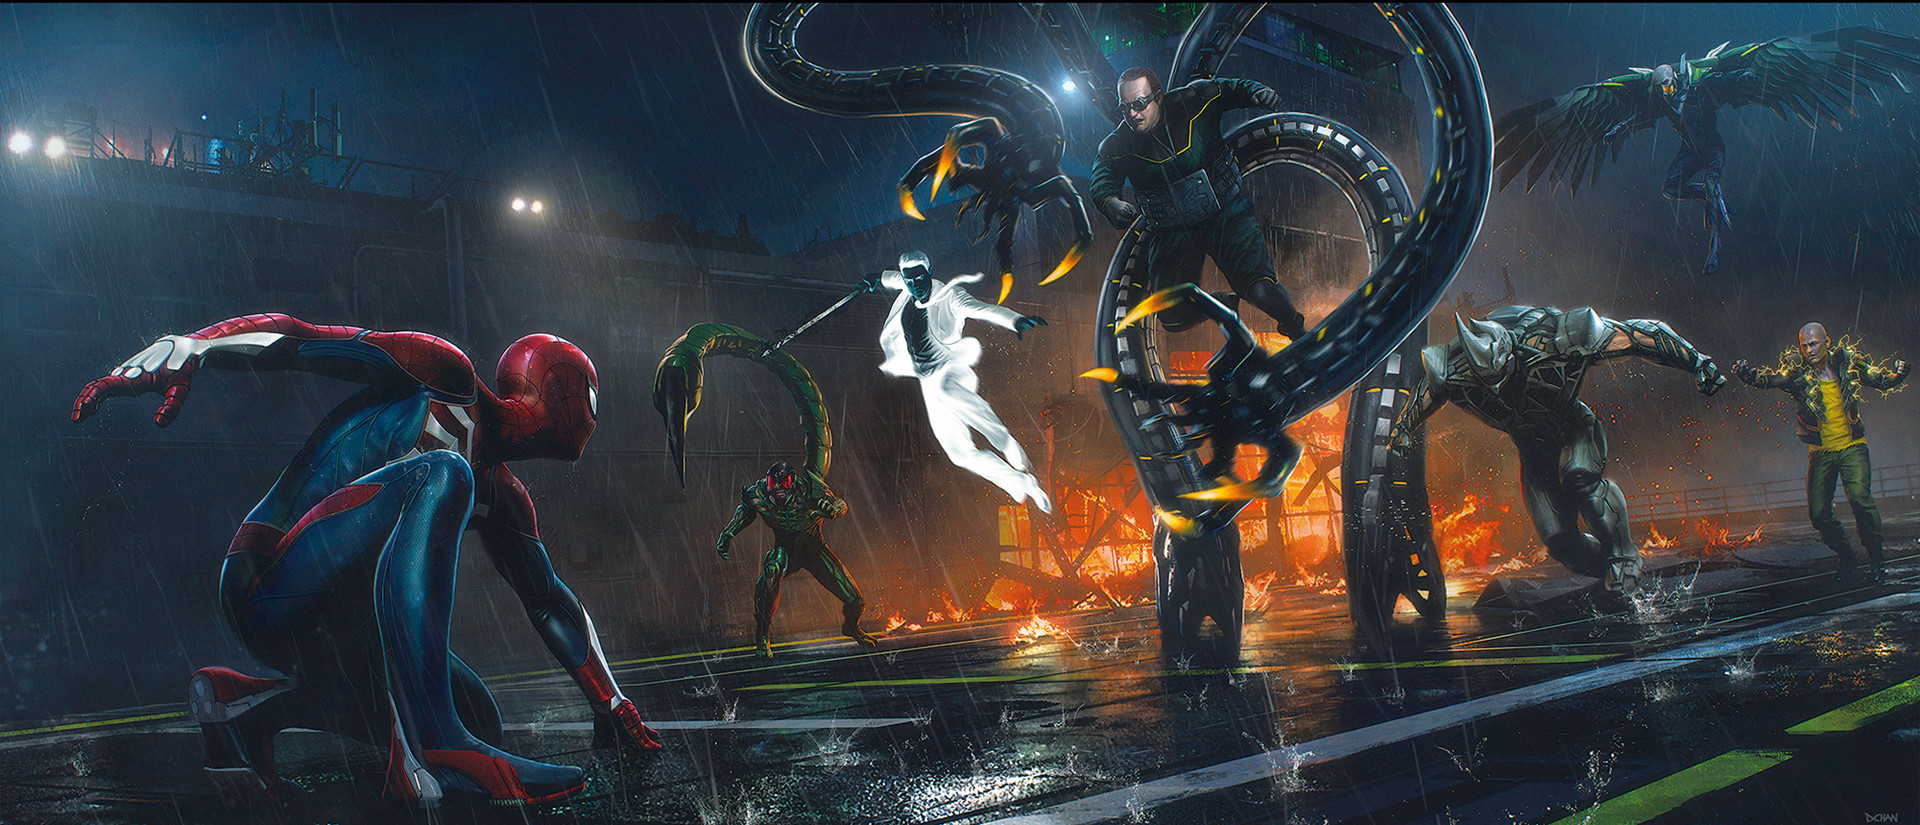 《漫威蜘蛛人》精美藝術概念圖 超級英雄激戰不休